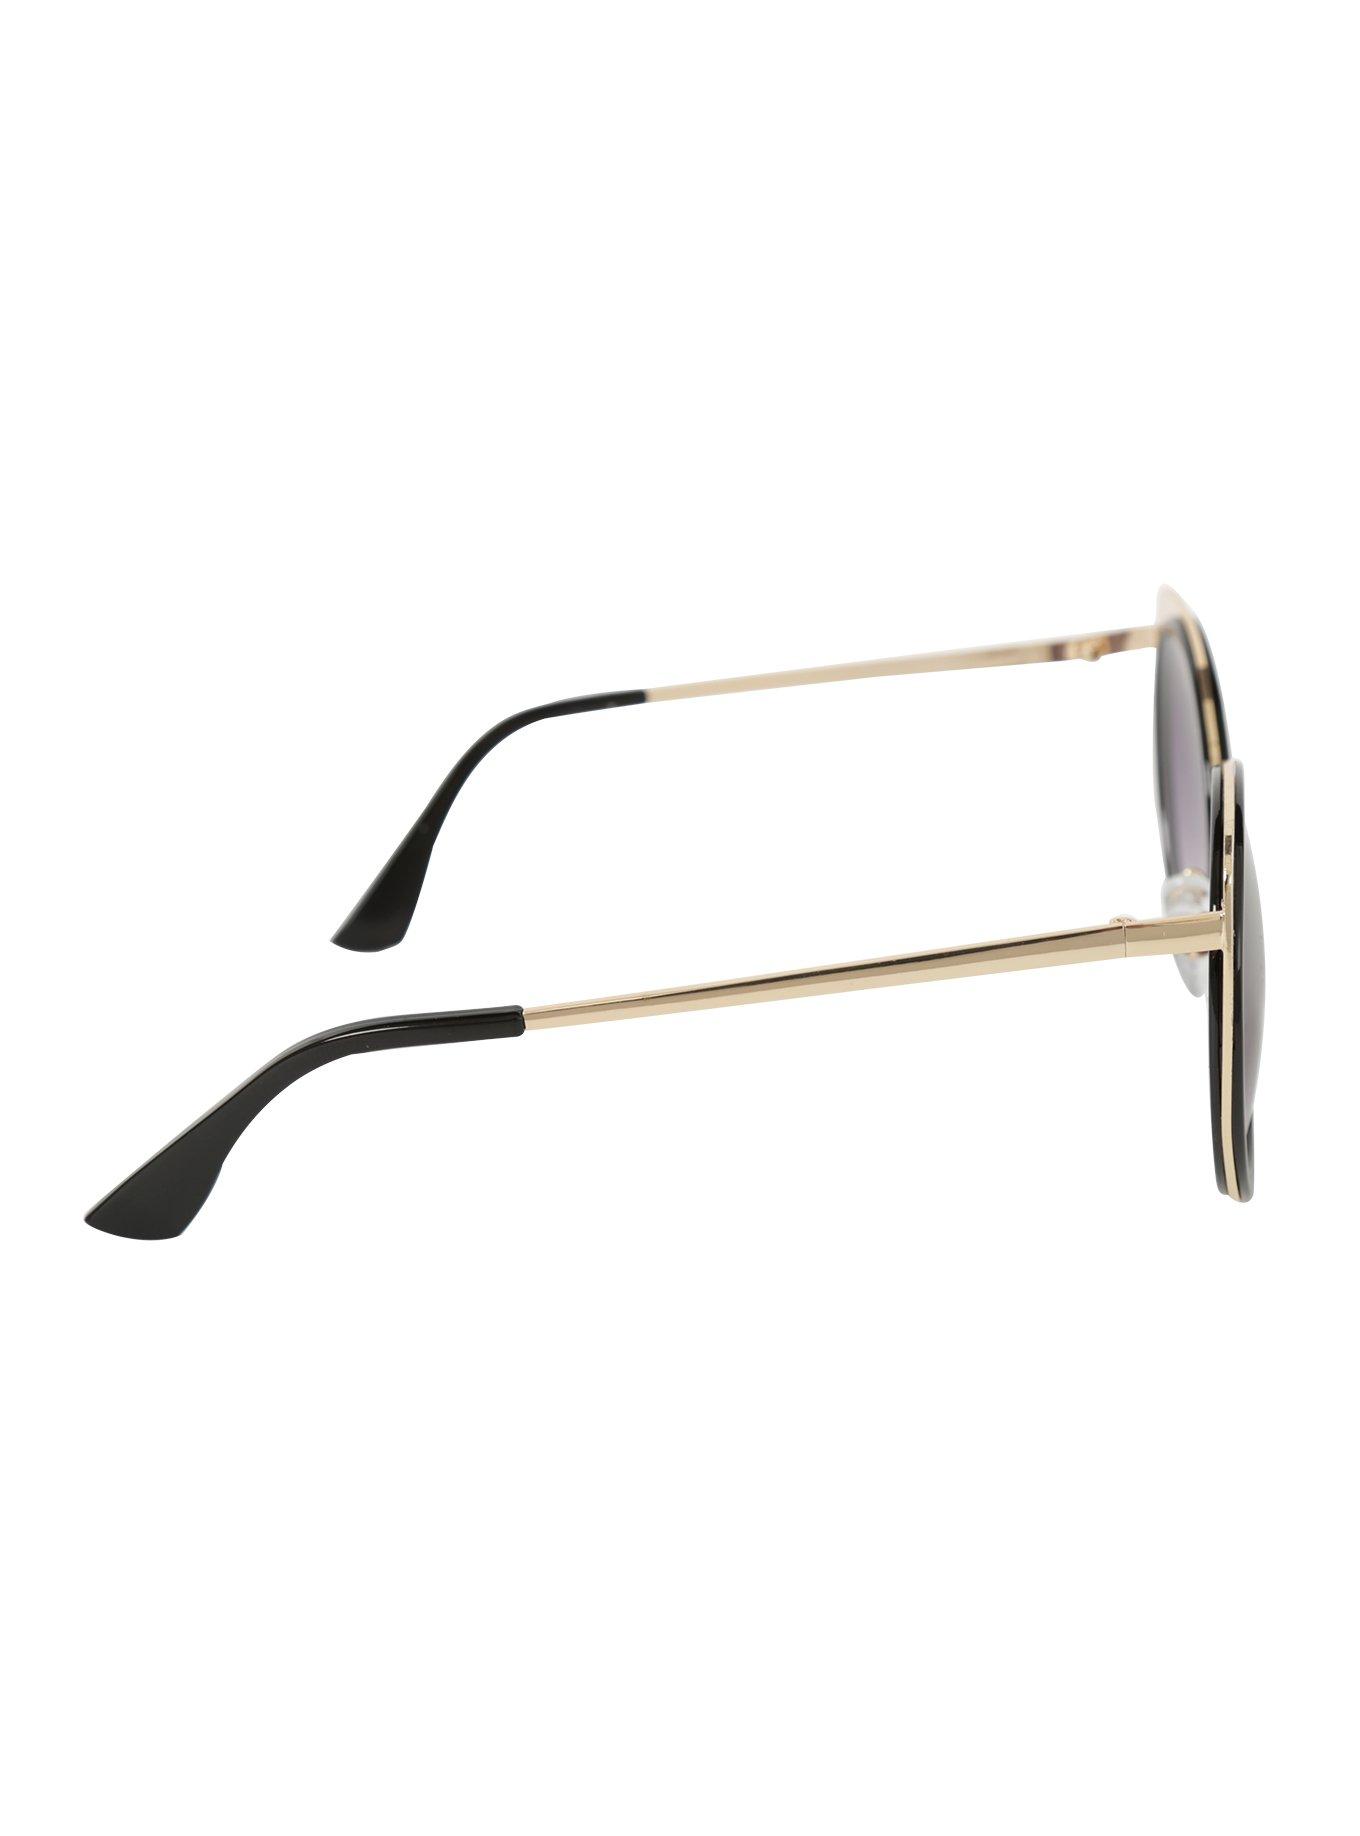 Black & Gold Smoke Lens Cat Eye Sunglasses, , alternate